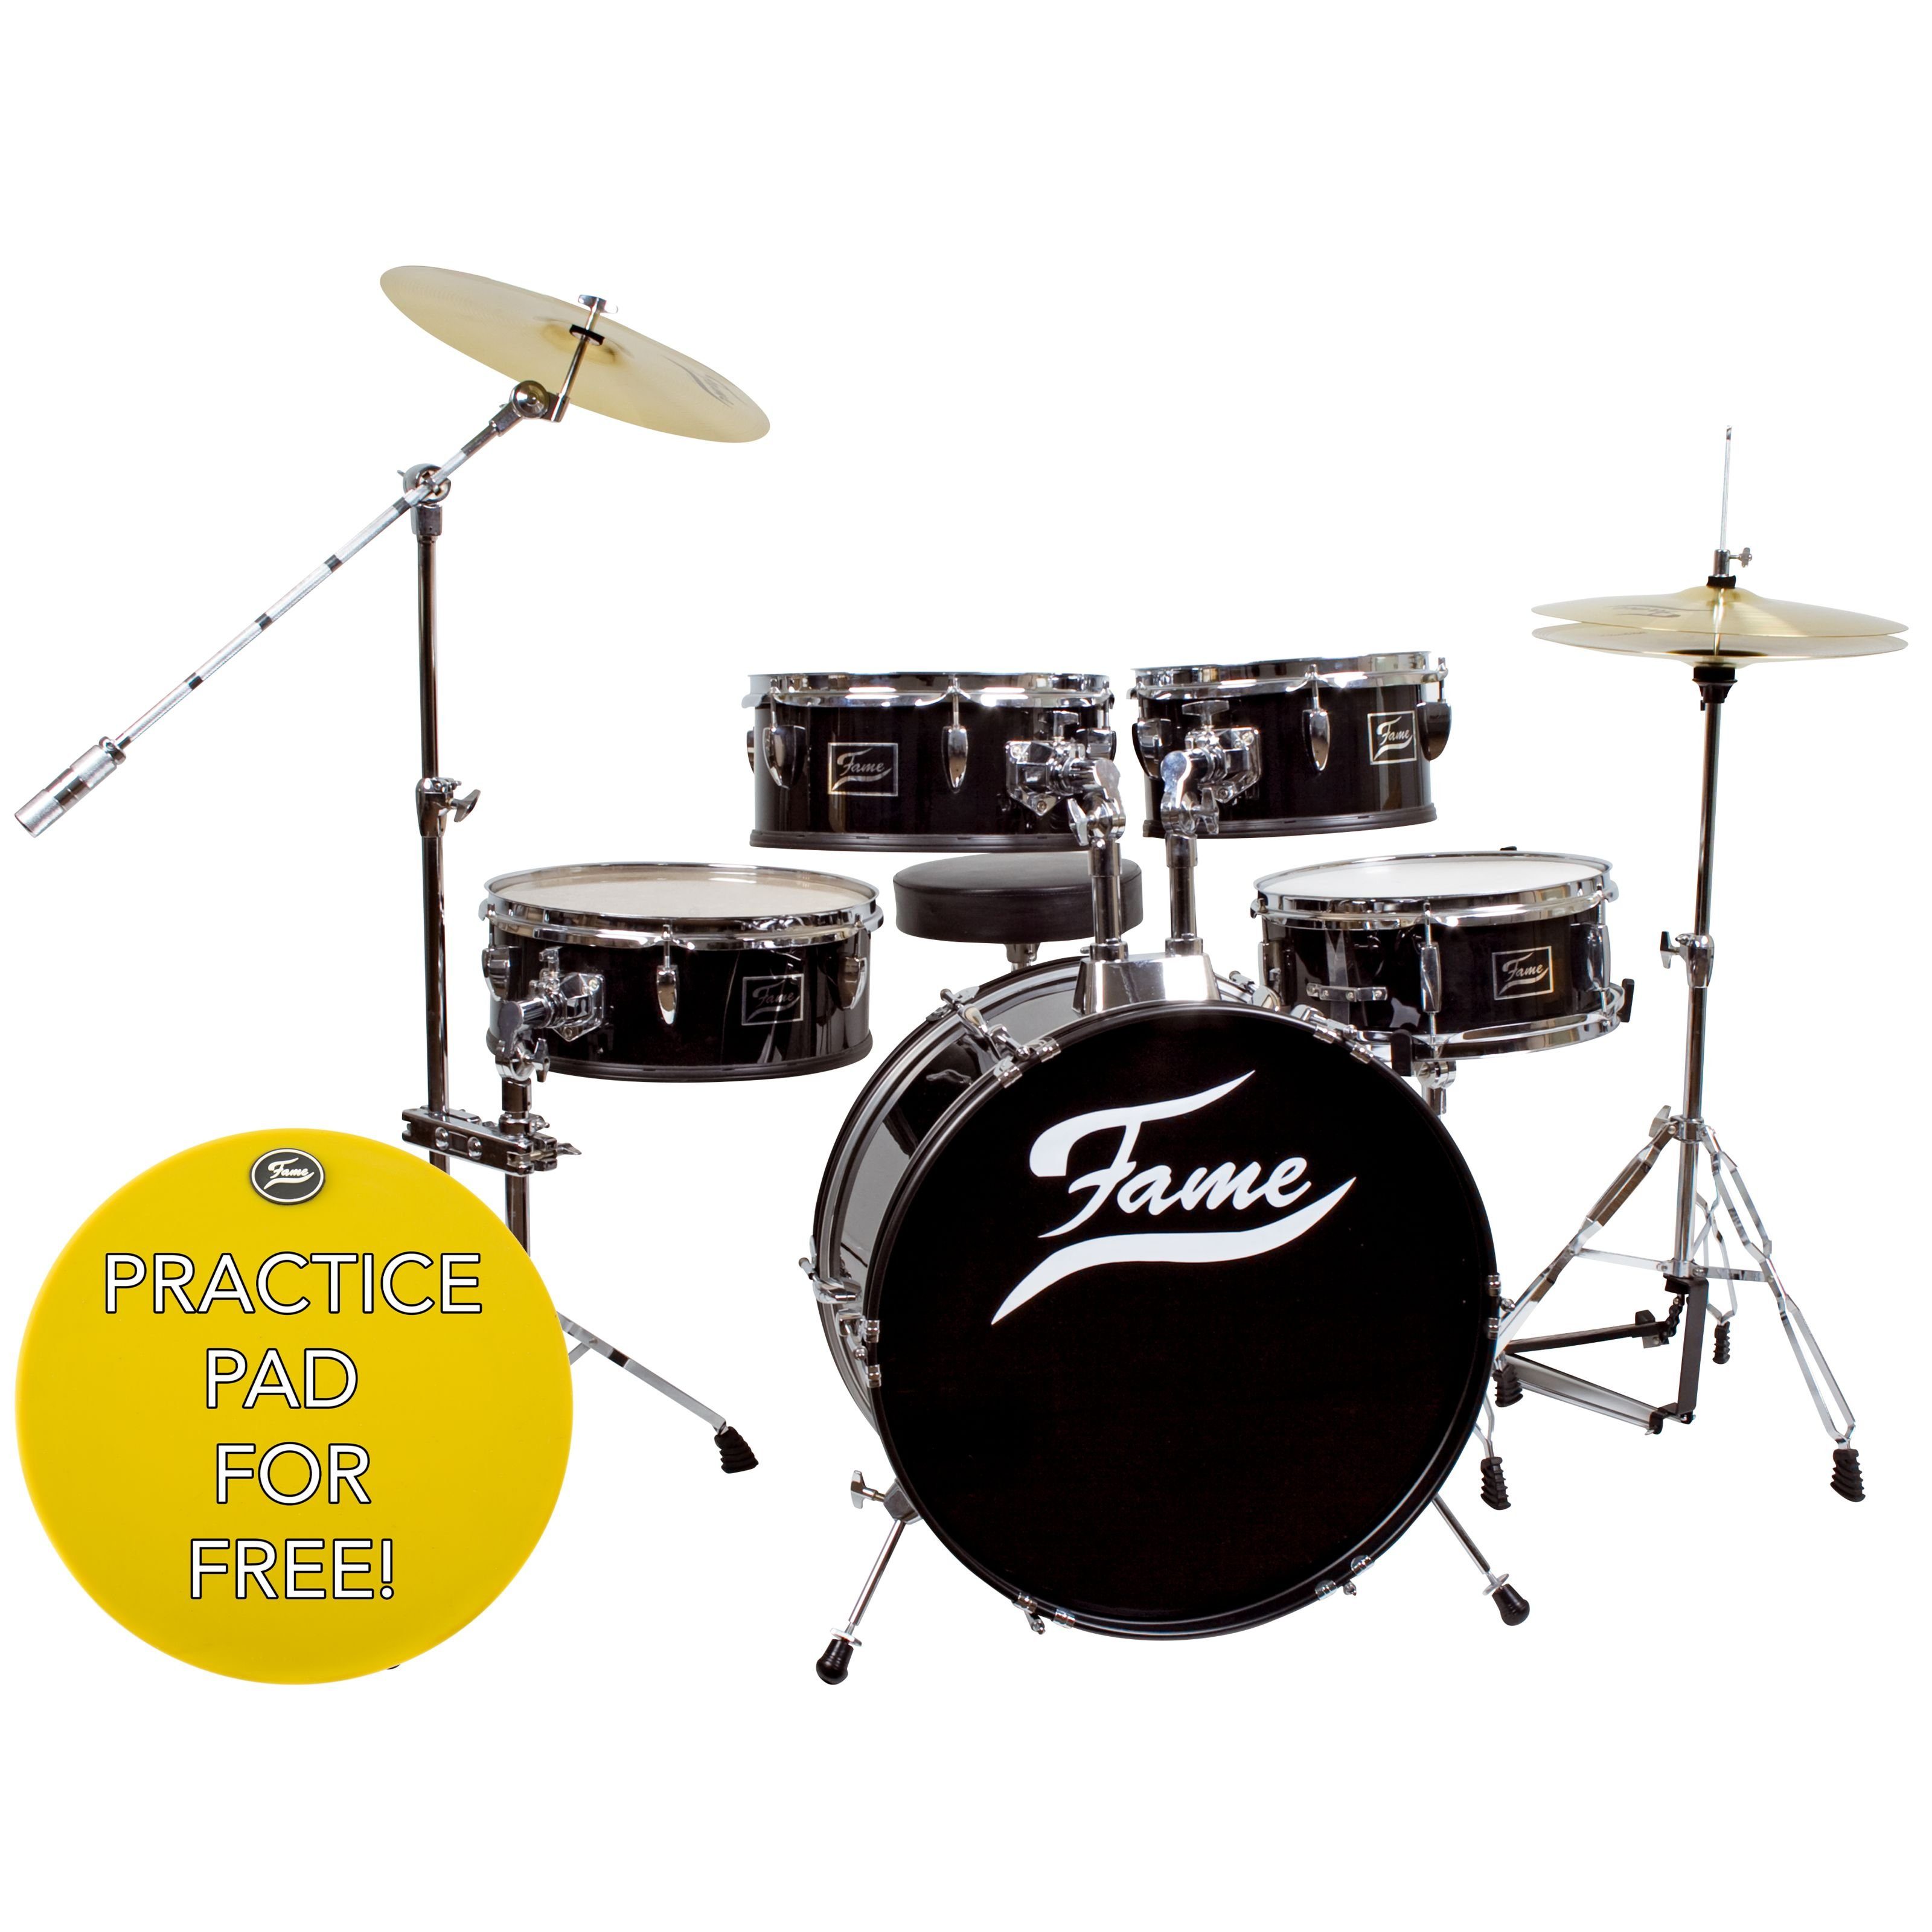 FAME Schlagzeug, Schlagzeug Practice Set incl. Cymbals & Hocker